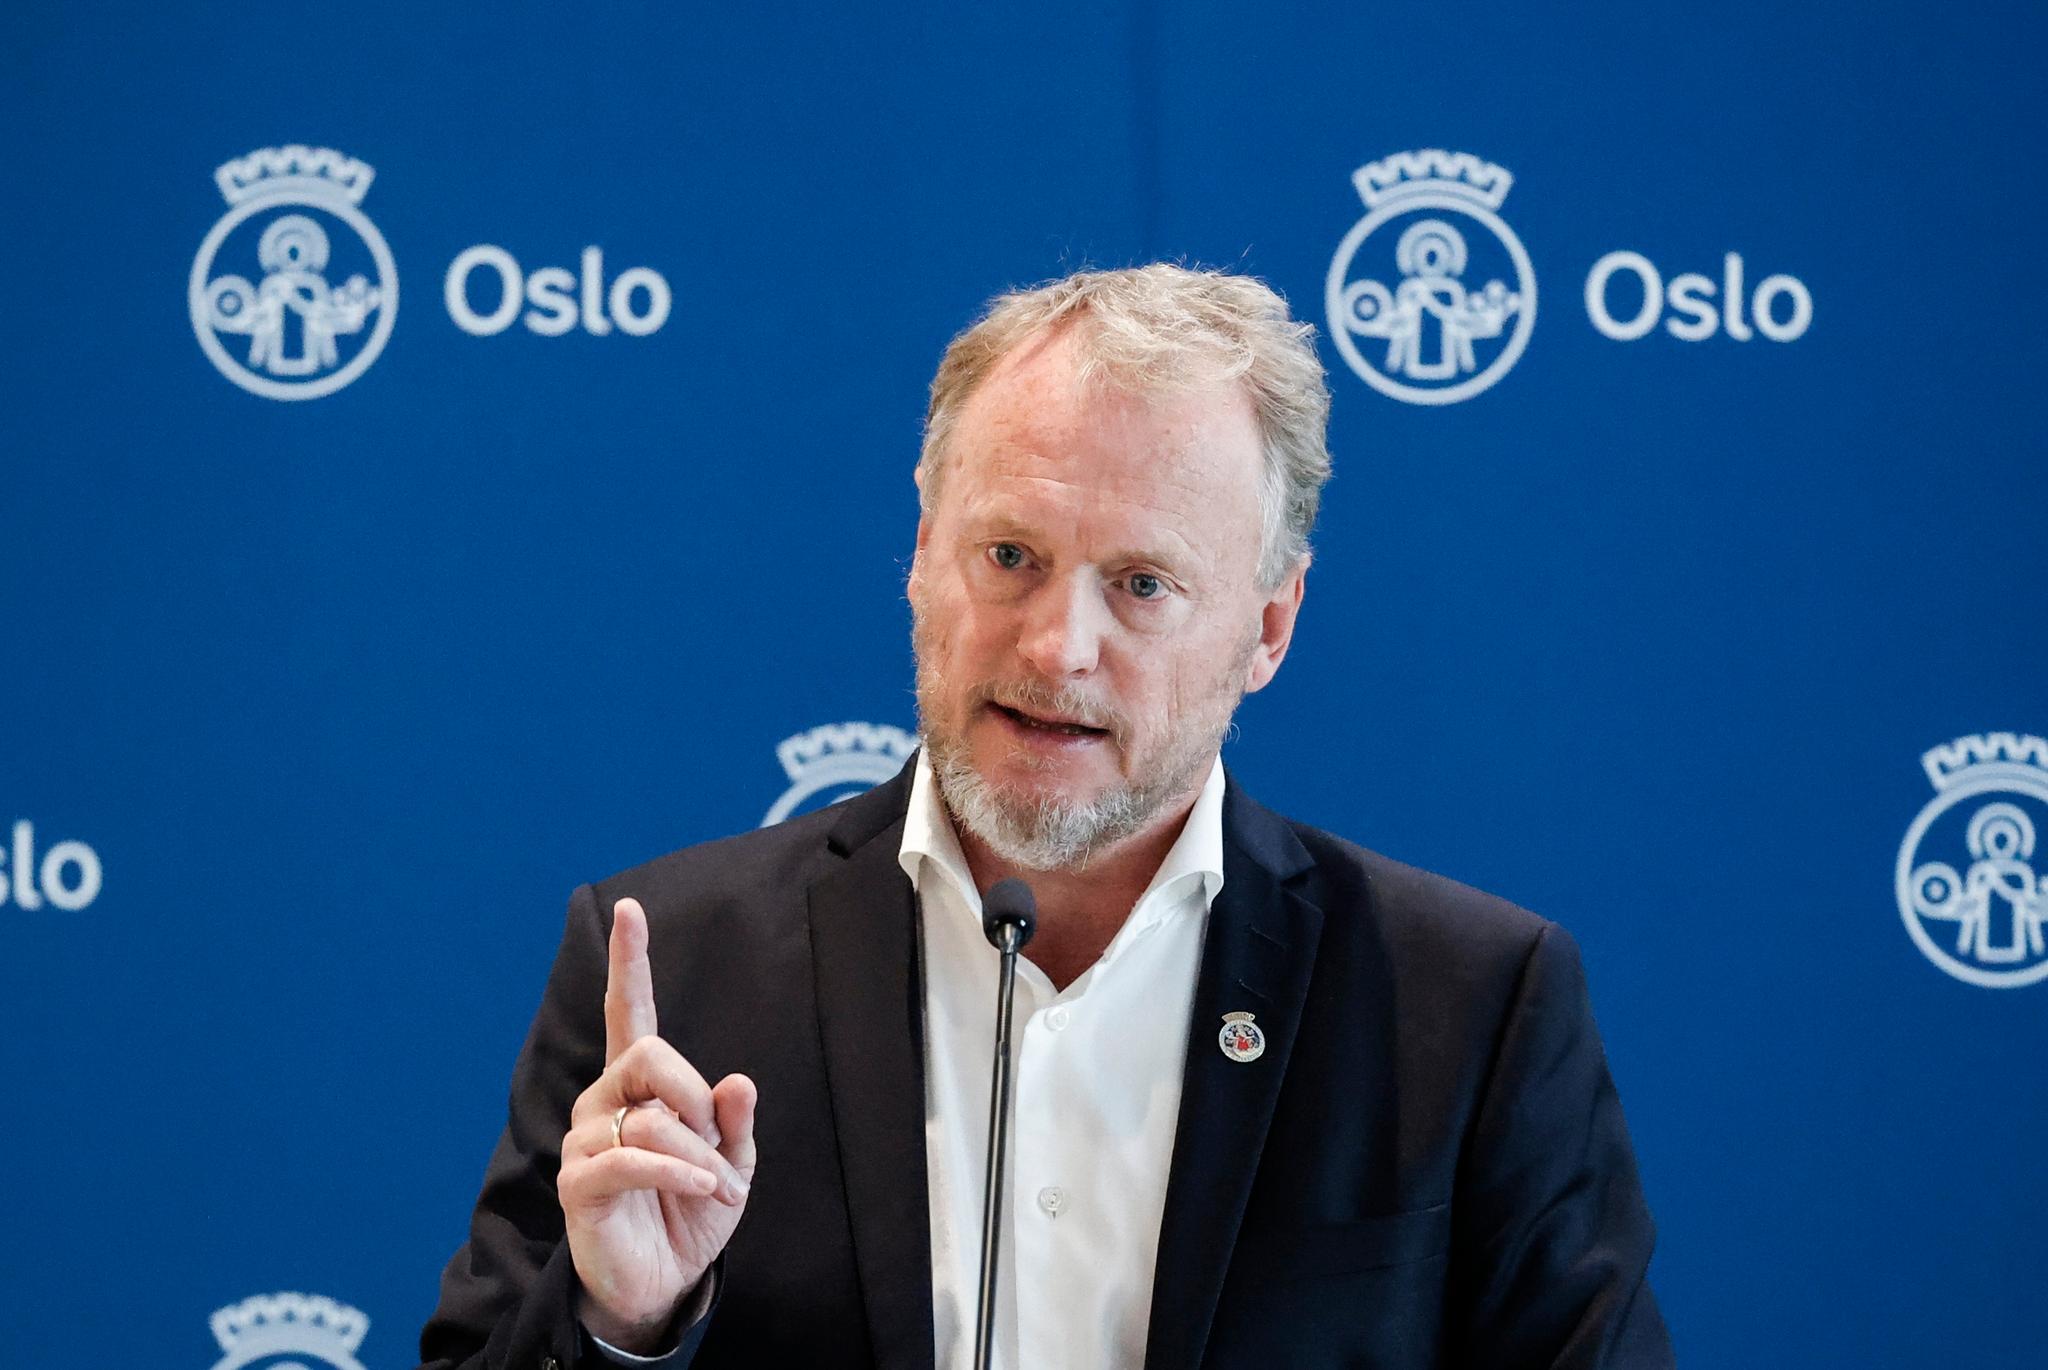 Byrådsleder Raymond Johansen (Ap) kan ikke love store lettelser når det onsdag skal orienteres om de videre koronatiltakene for Oslo.